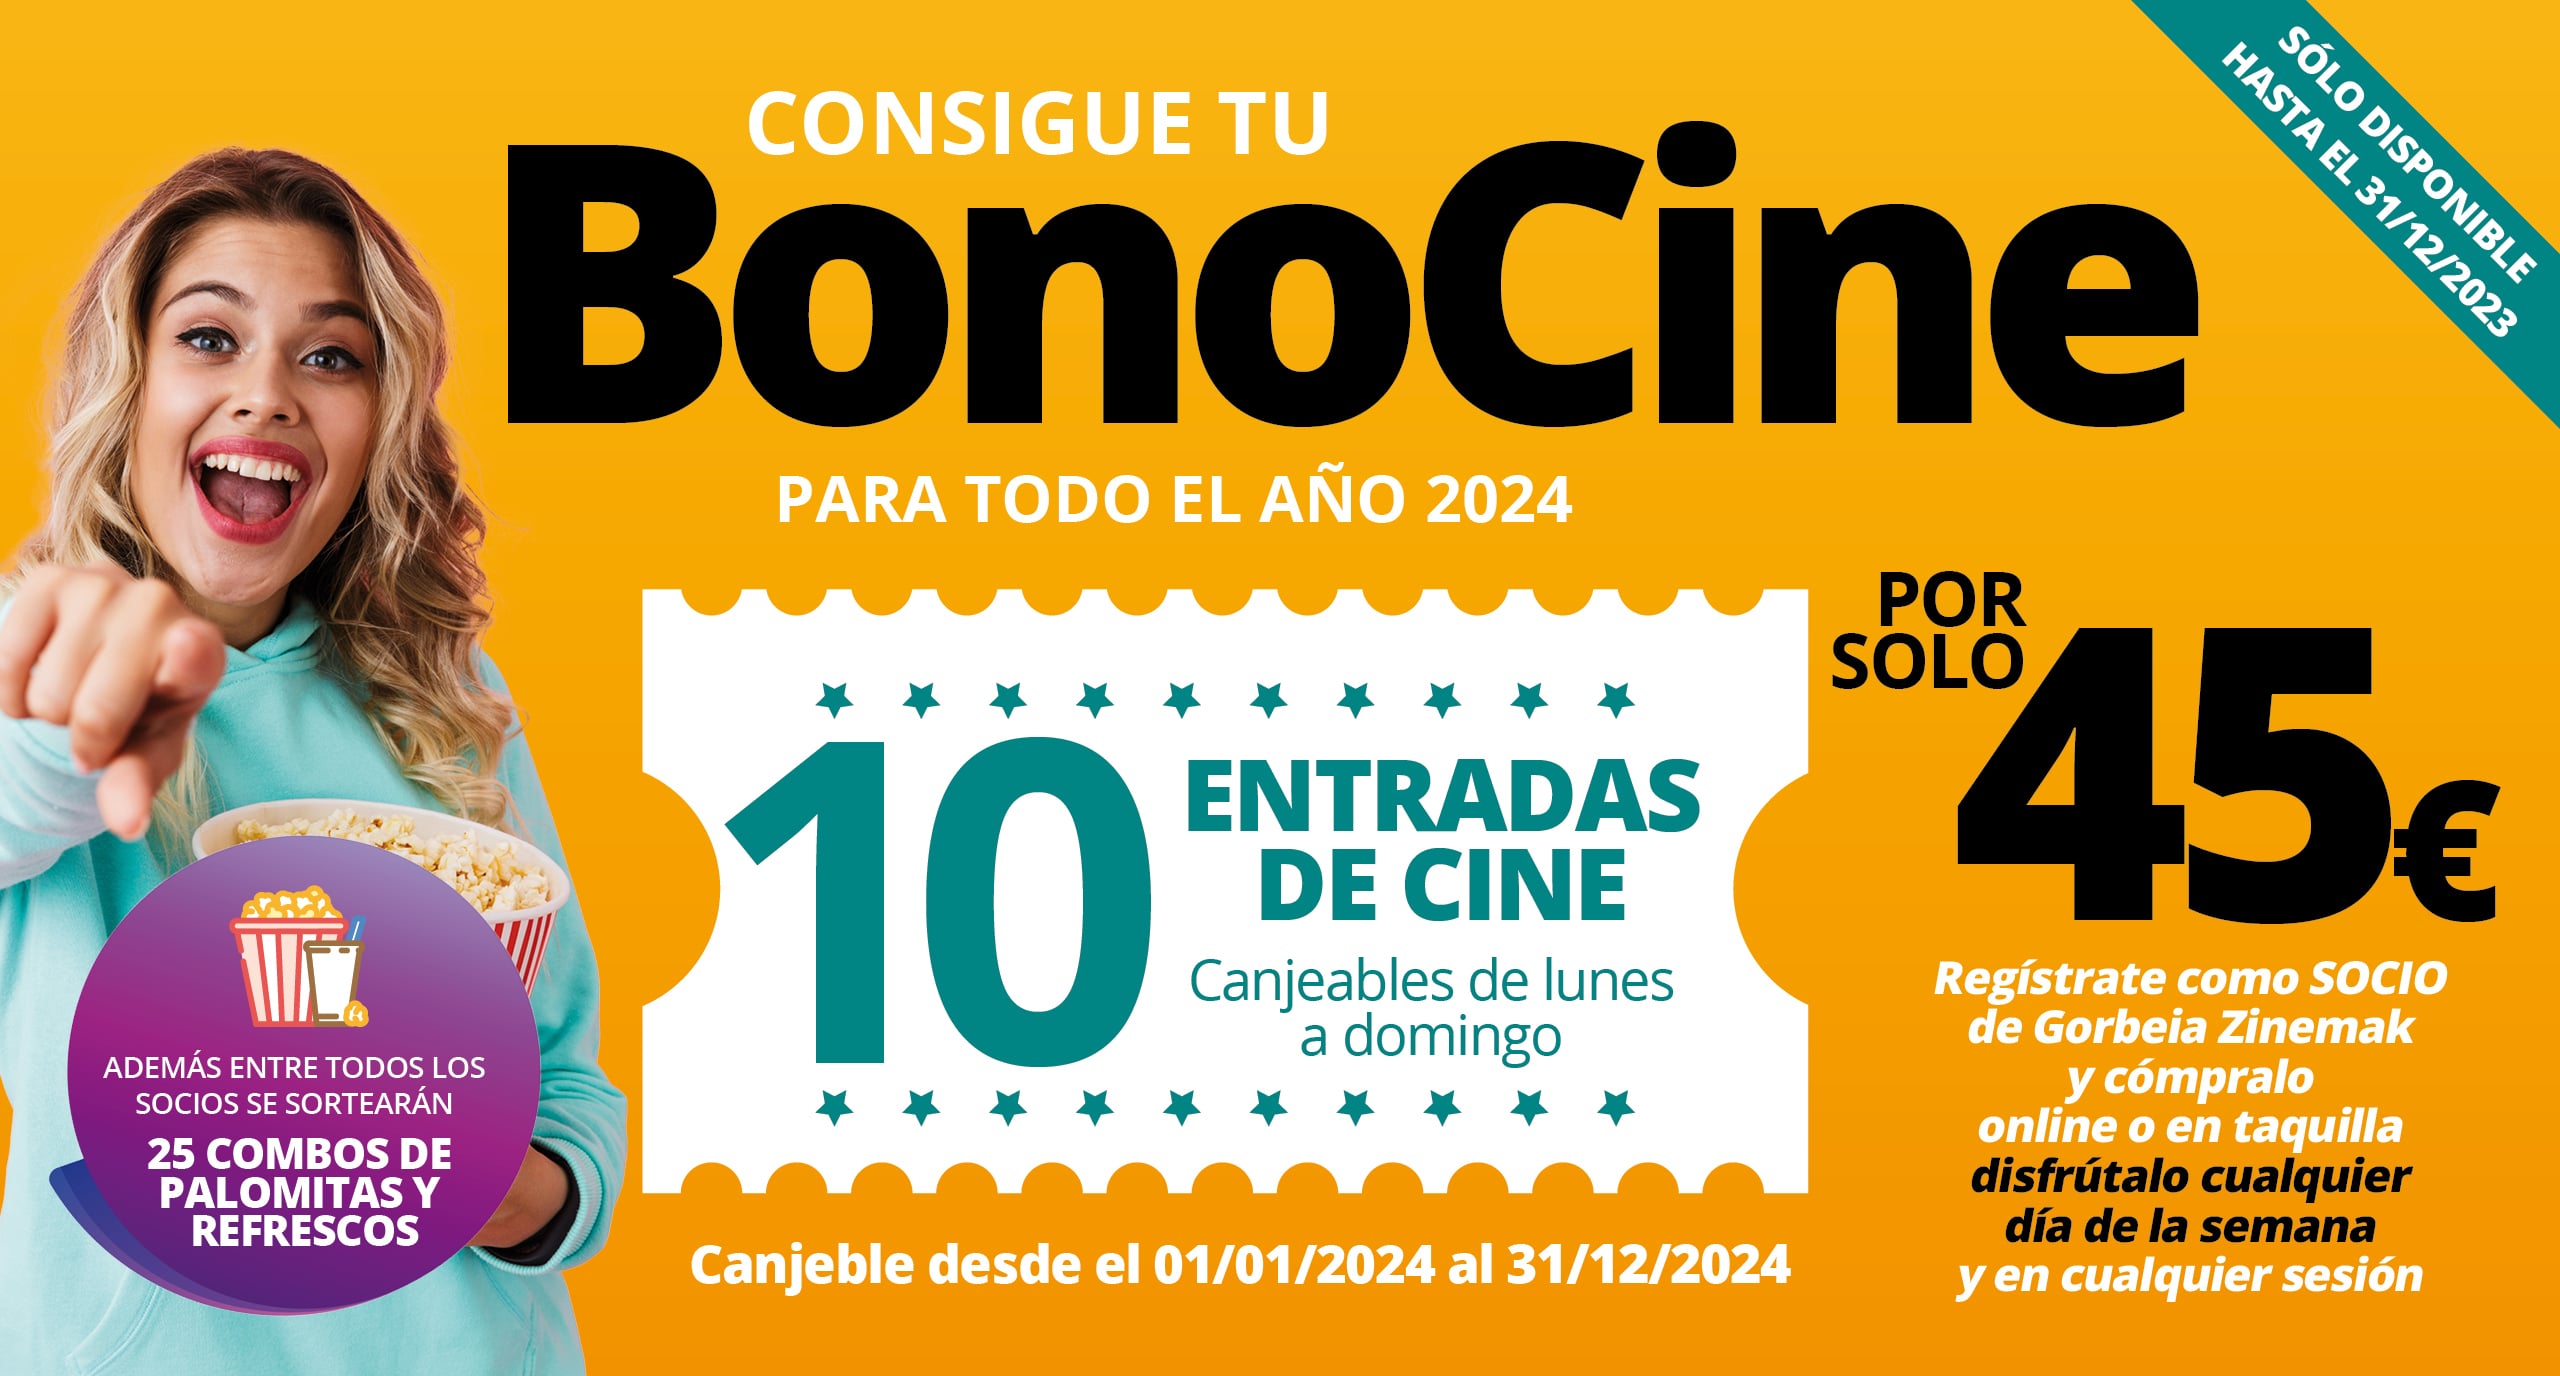 ¡Consigue tu BonoCine para todo el año 2024!